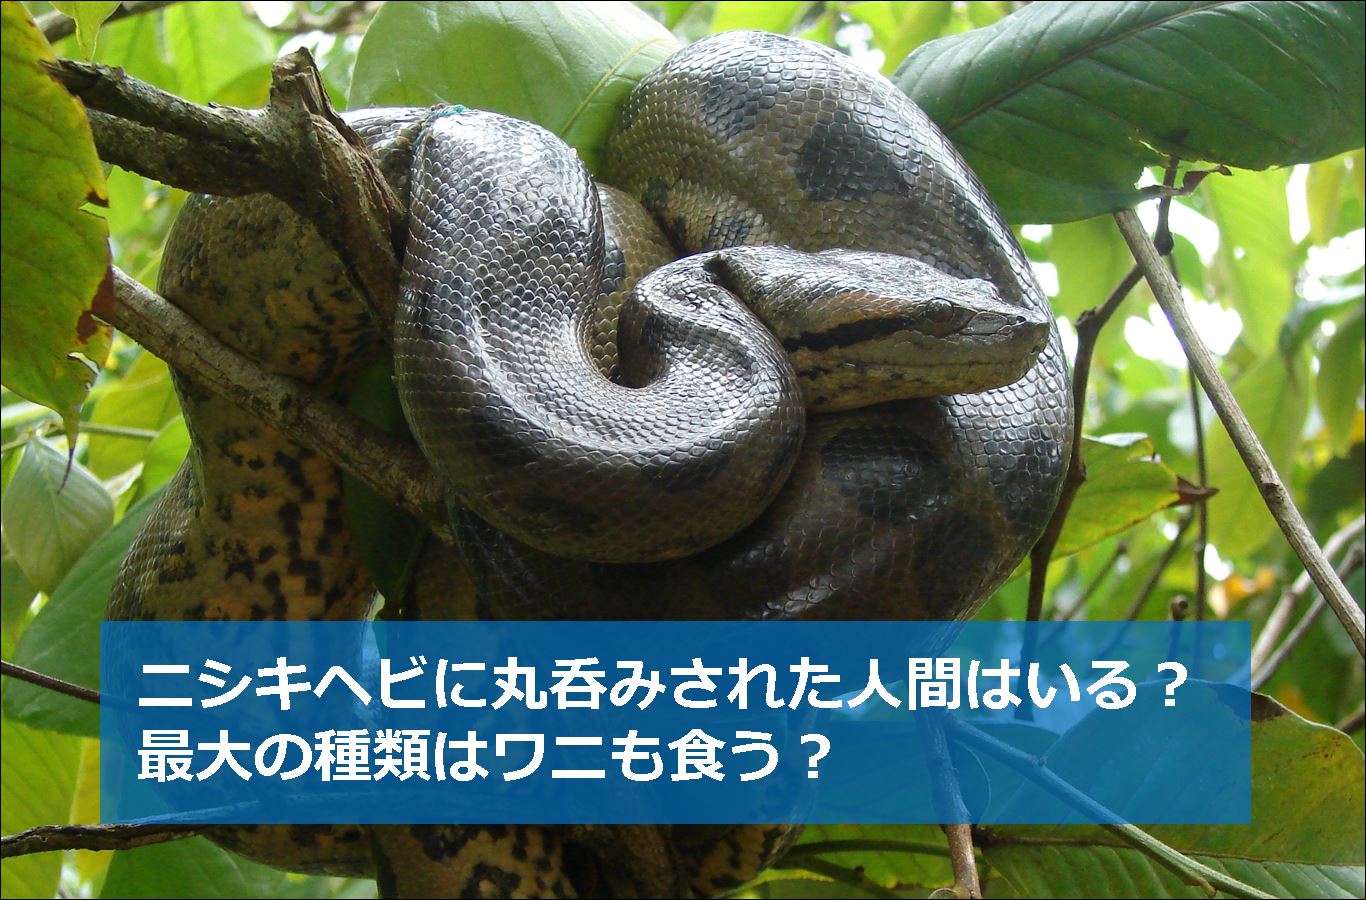 ニシキヘビに丸呑みされた人間はいる 最大の種類はワニも食う 生物モラトリアム